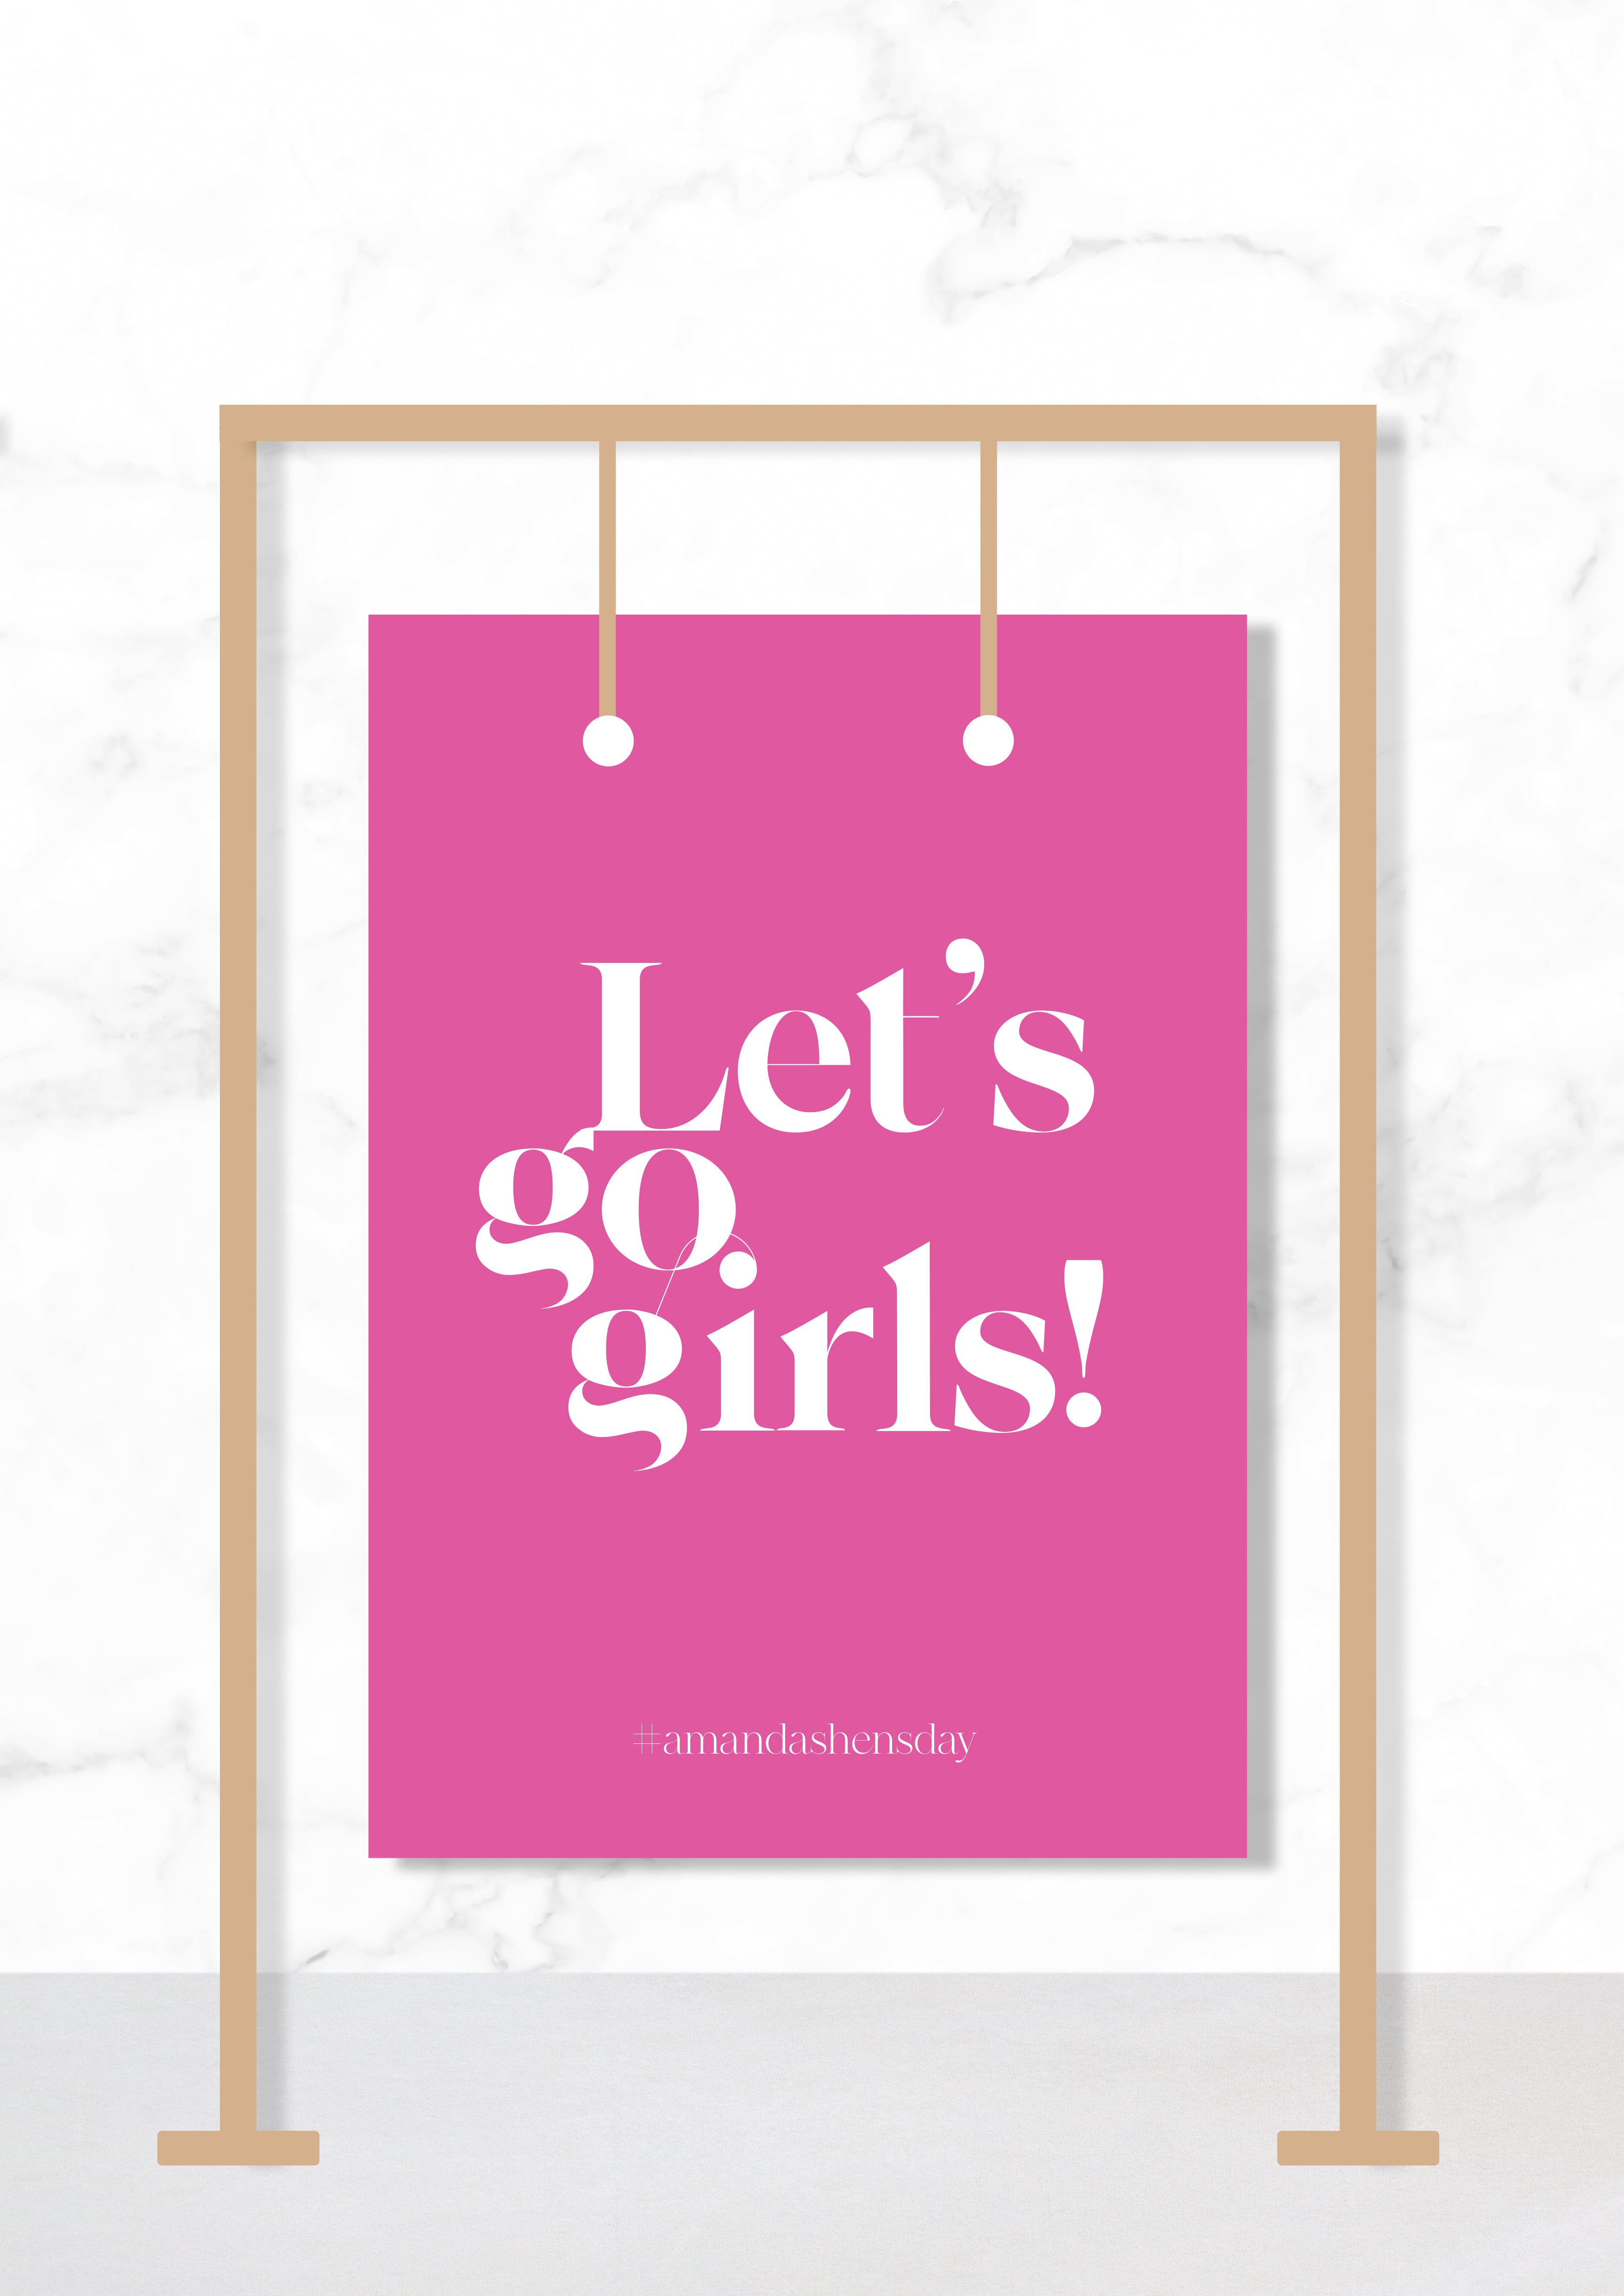 Let's go girls!